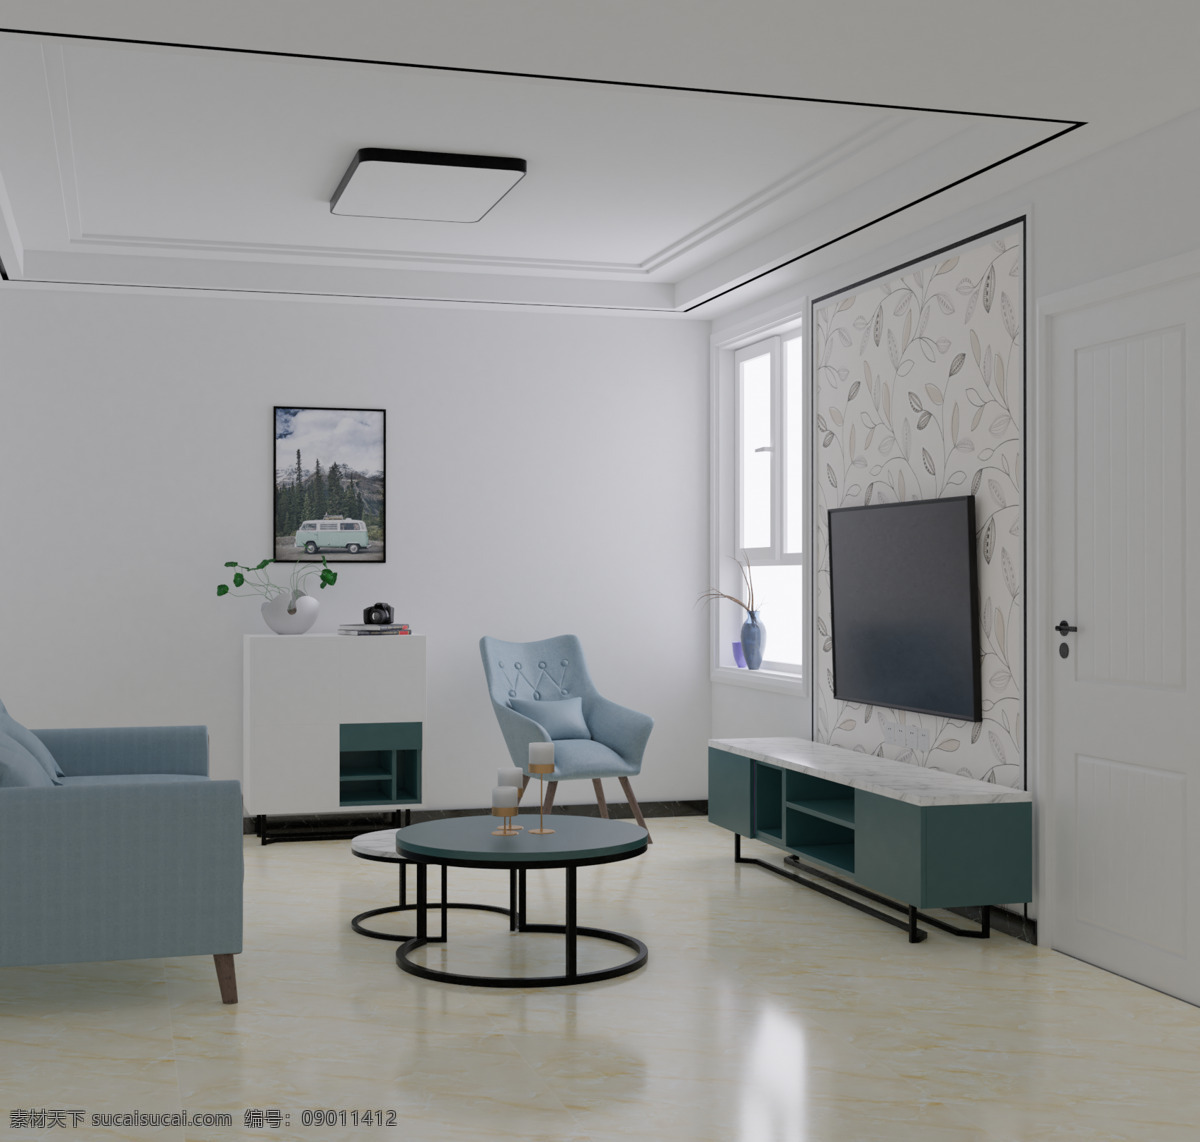 小 户型 客厅 效果图 blender 原创 北欧风 3d设计 3d作品